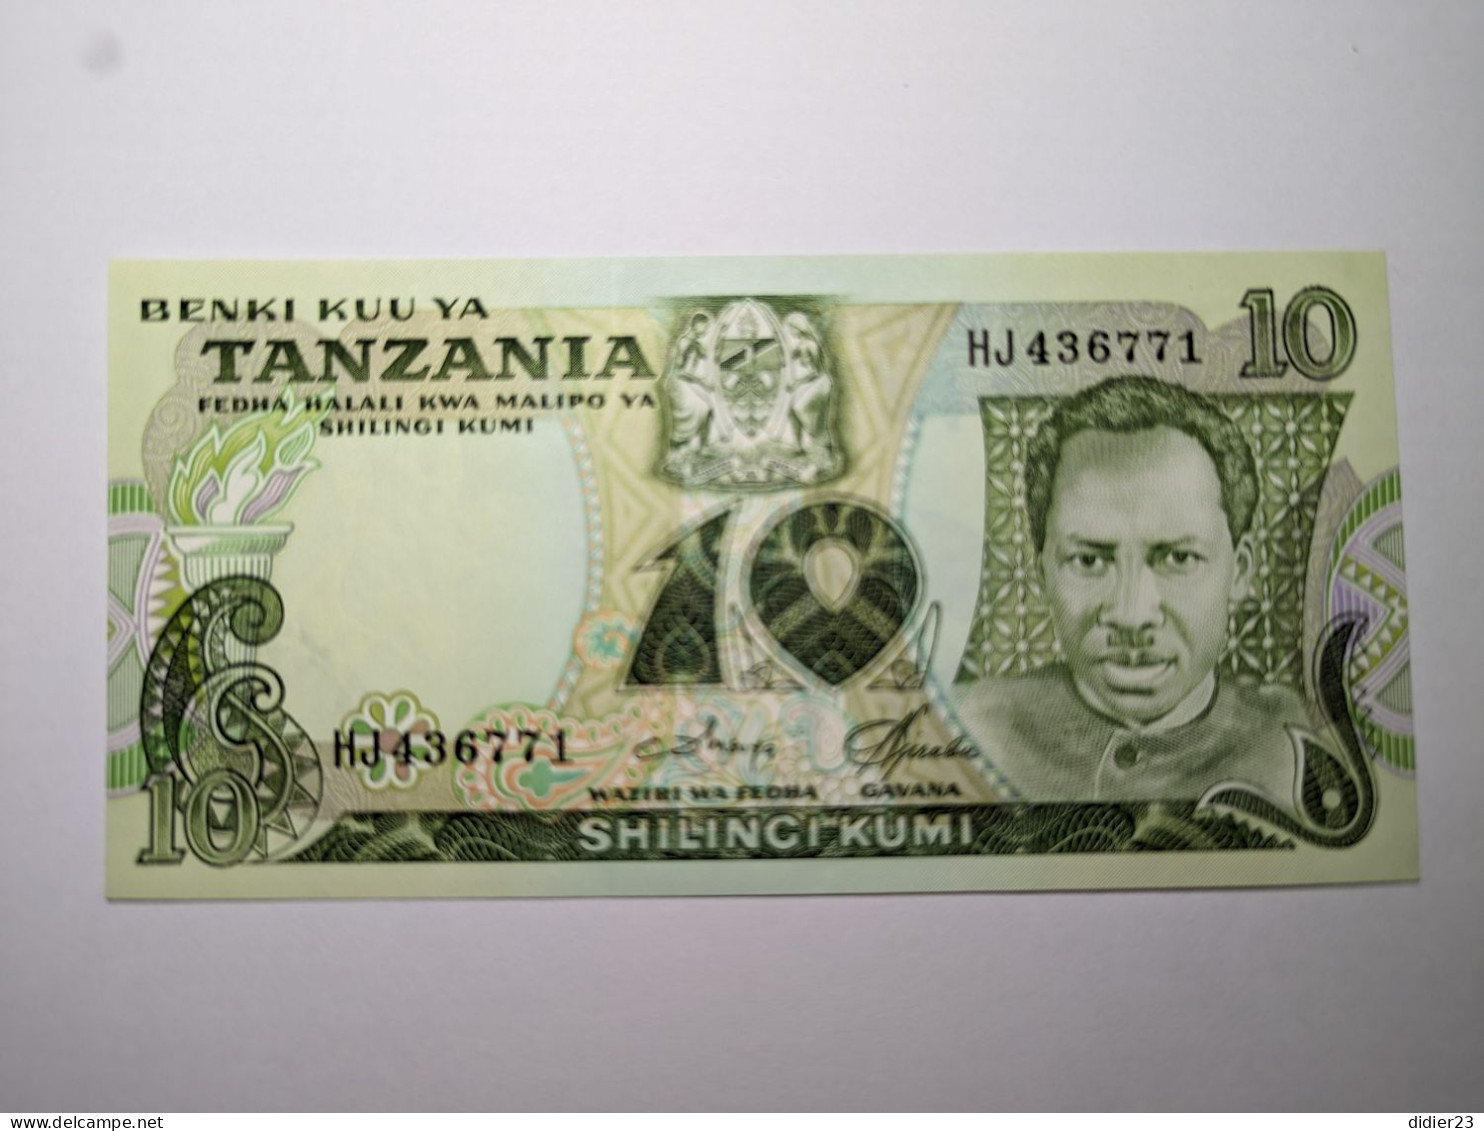 BILLET DE BANQUE TANZANIE - Tanzania